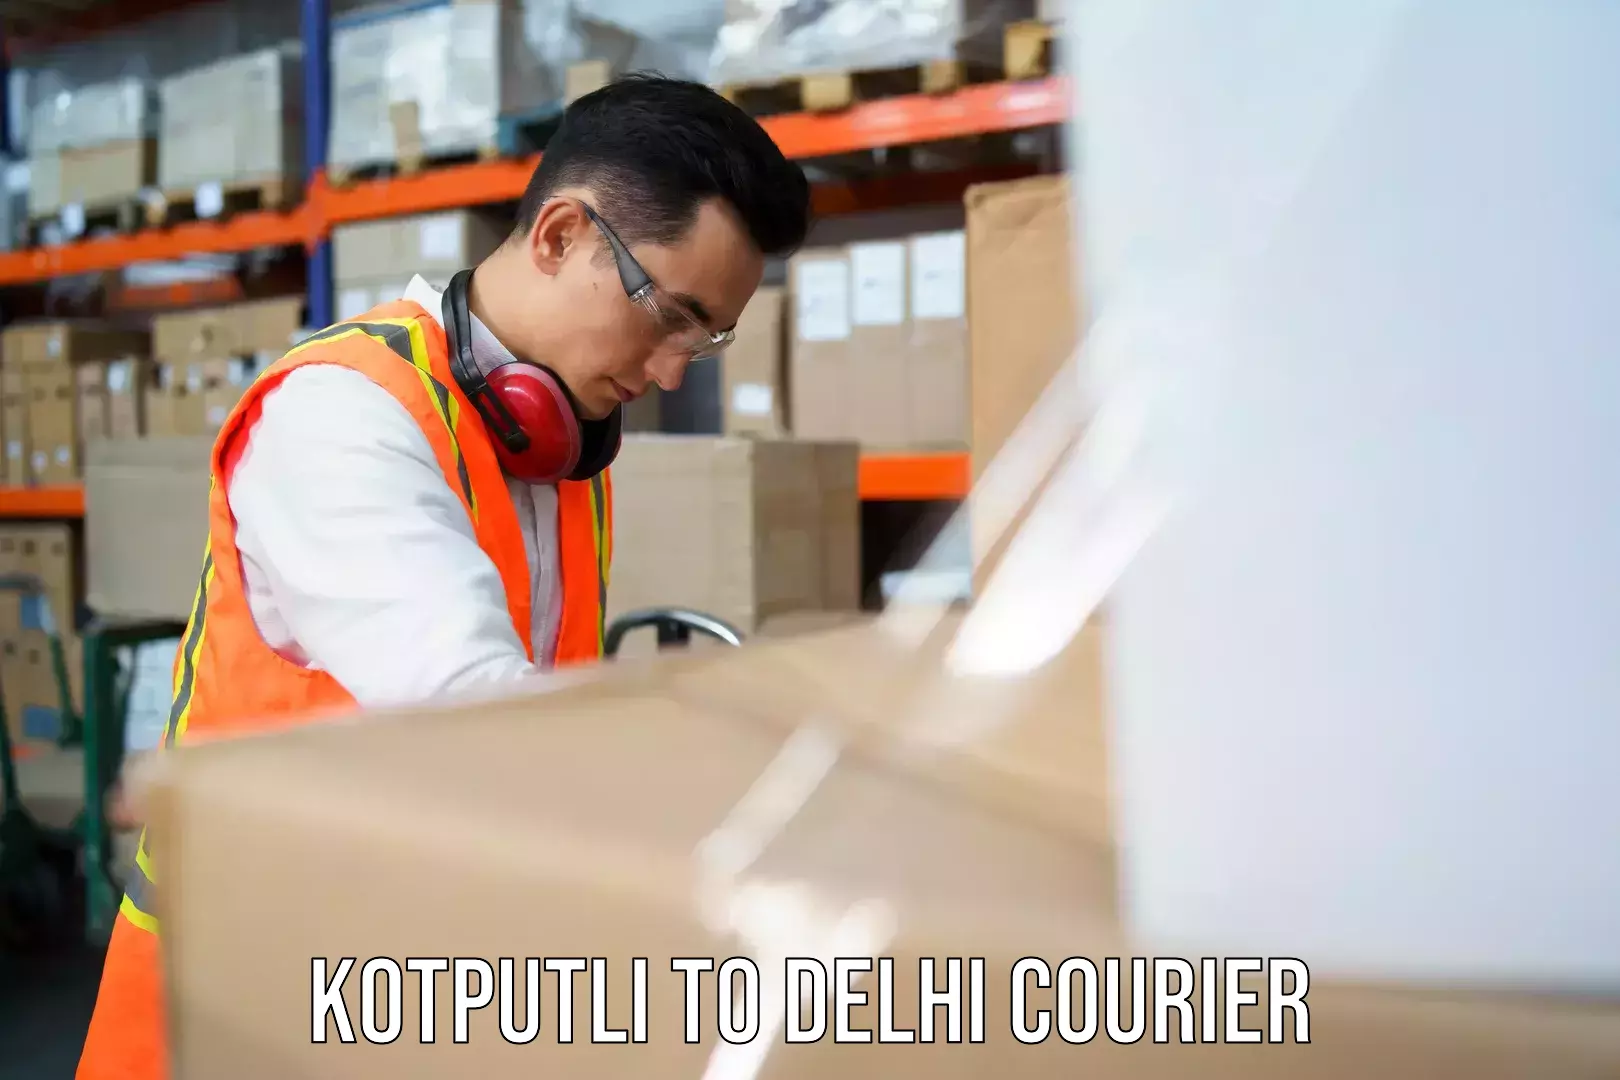 Efficient cargo handling Kotputli to NIT Delhi